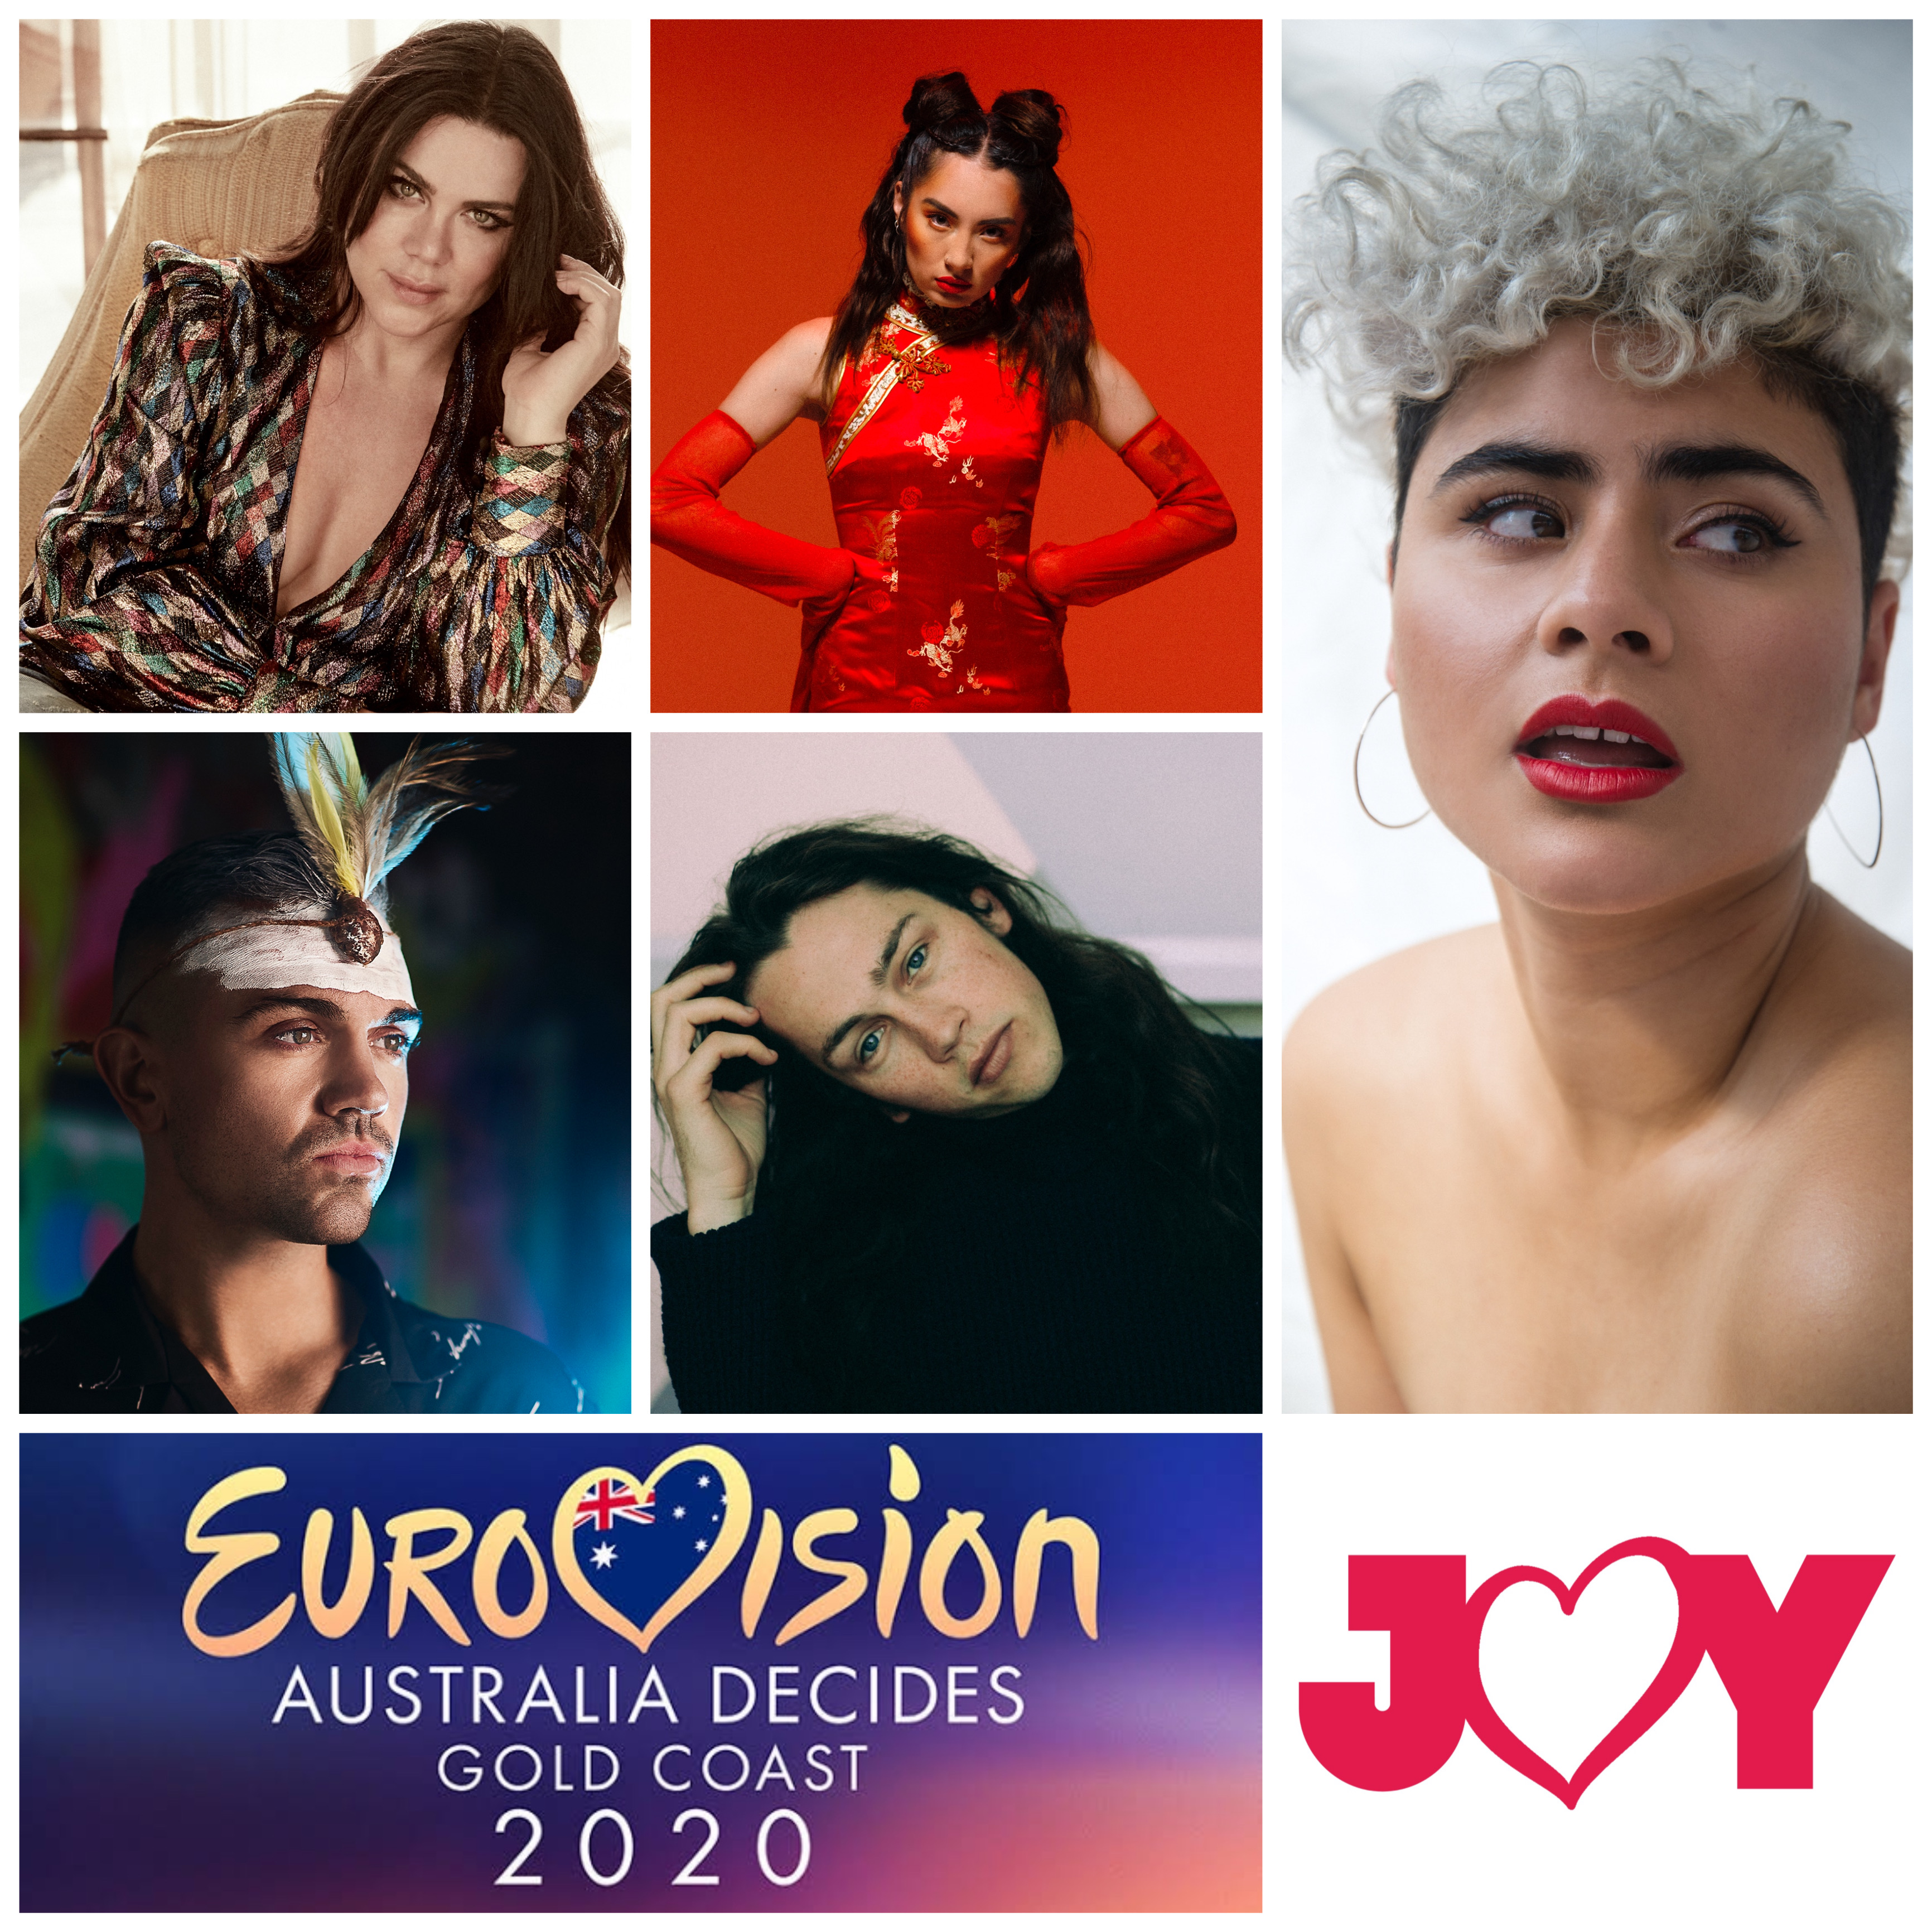 Previewing Eurovision: Australia Decides 2020 – Part 2